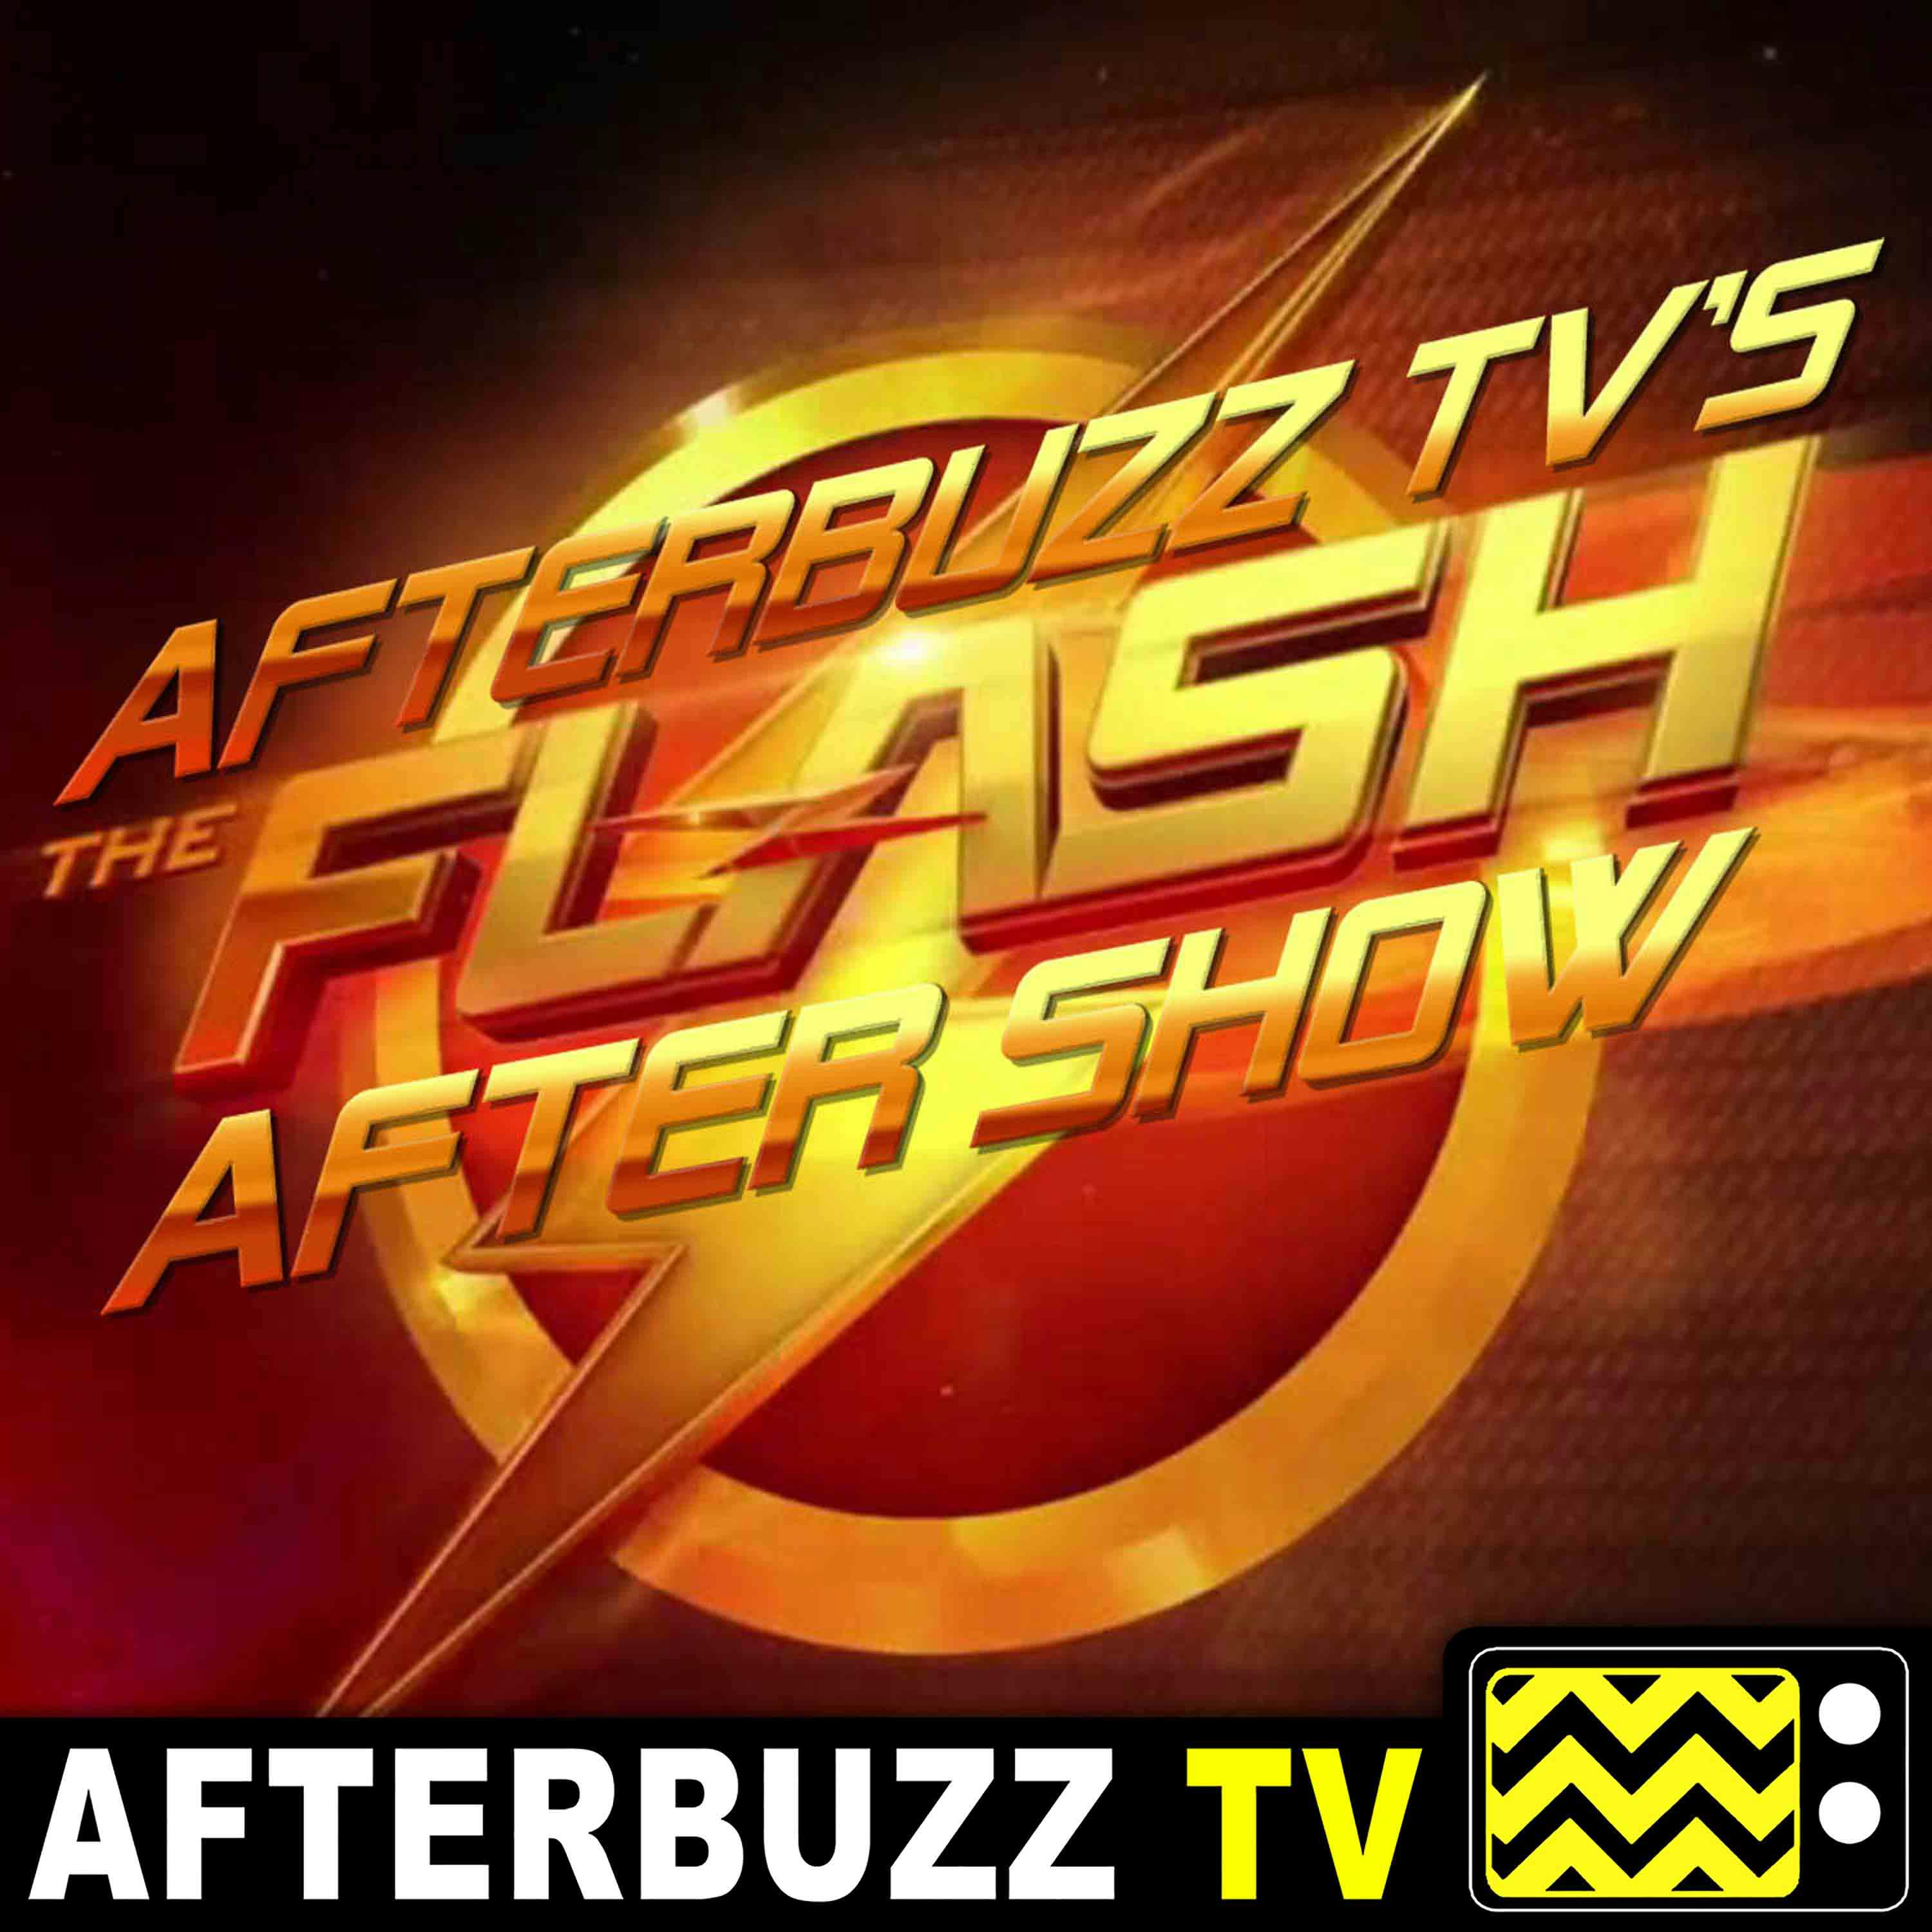 ”The Last Temptation of Barry Allen Part 1” Season 6 Episode 7 ’The Flash’ Review